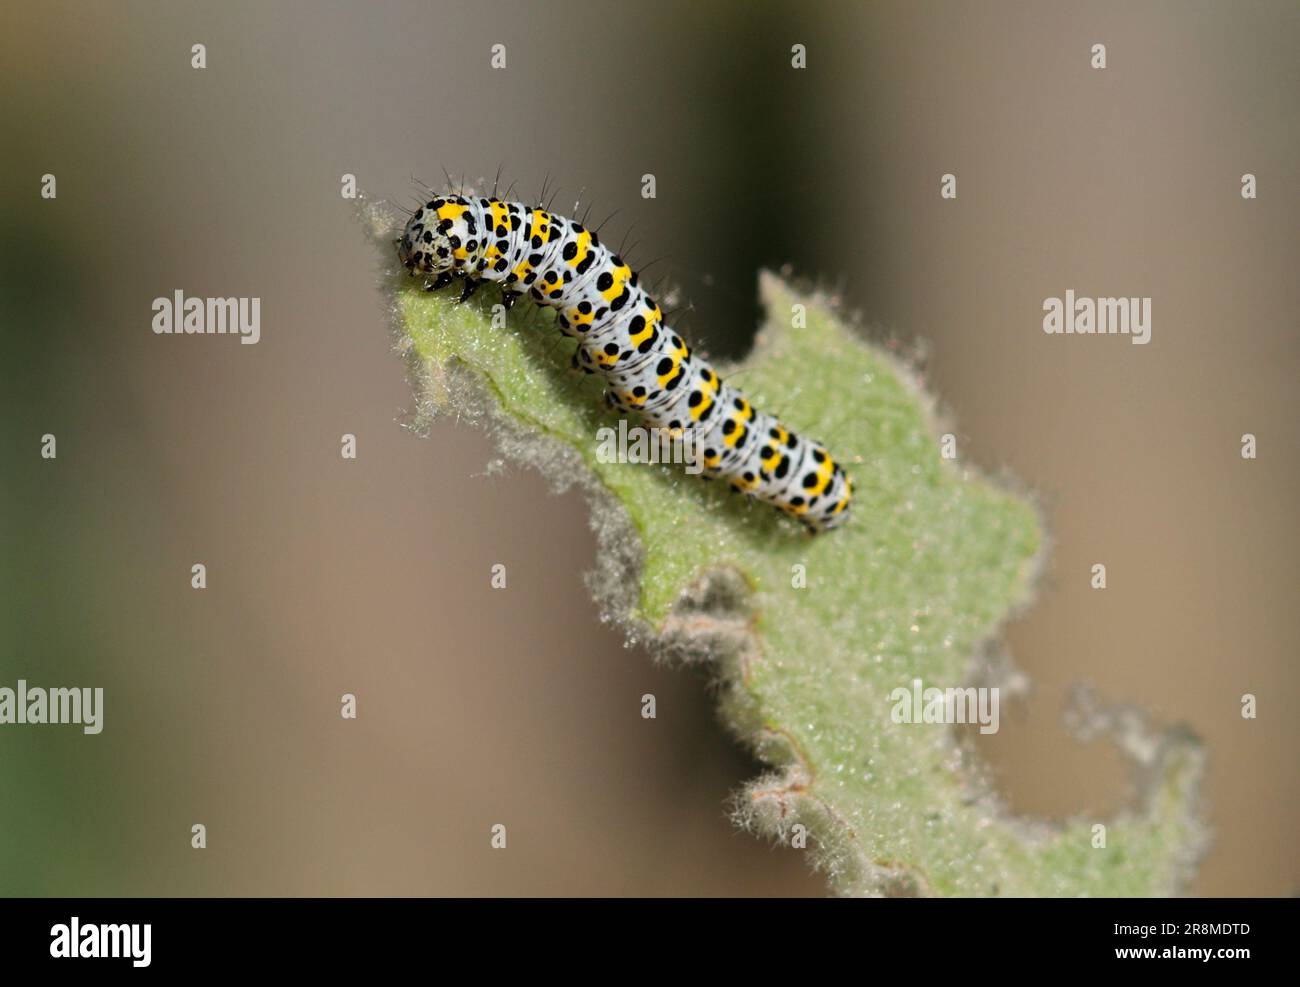 Mullein Moth Caterpillar (cucullia verbasci) on Mullein Plant Stock Photo